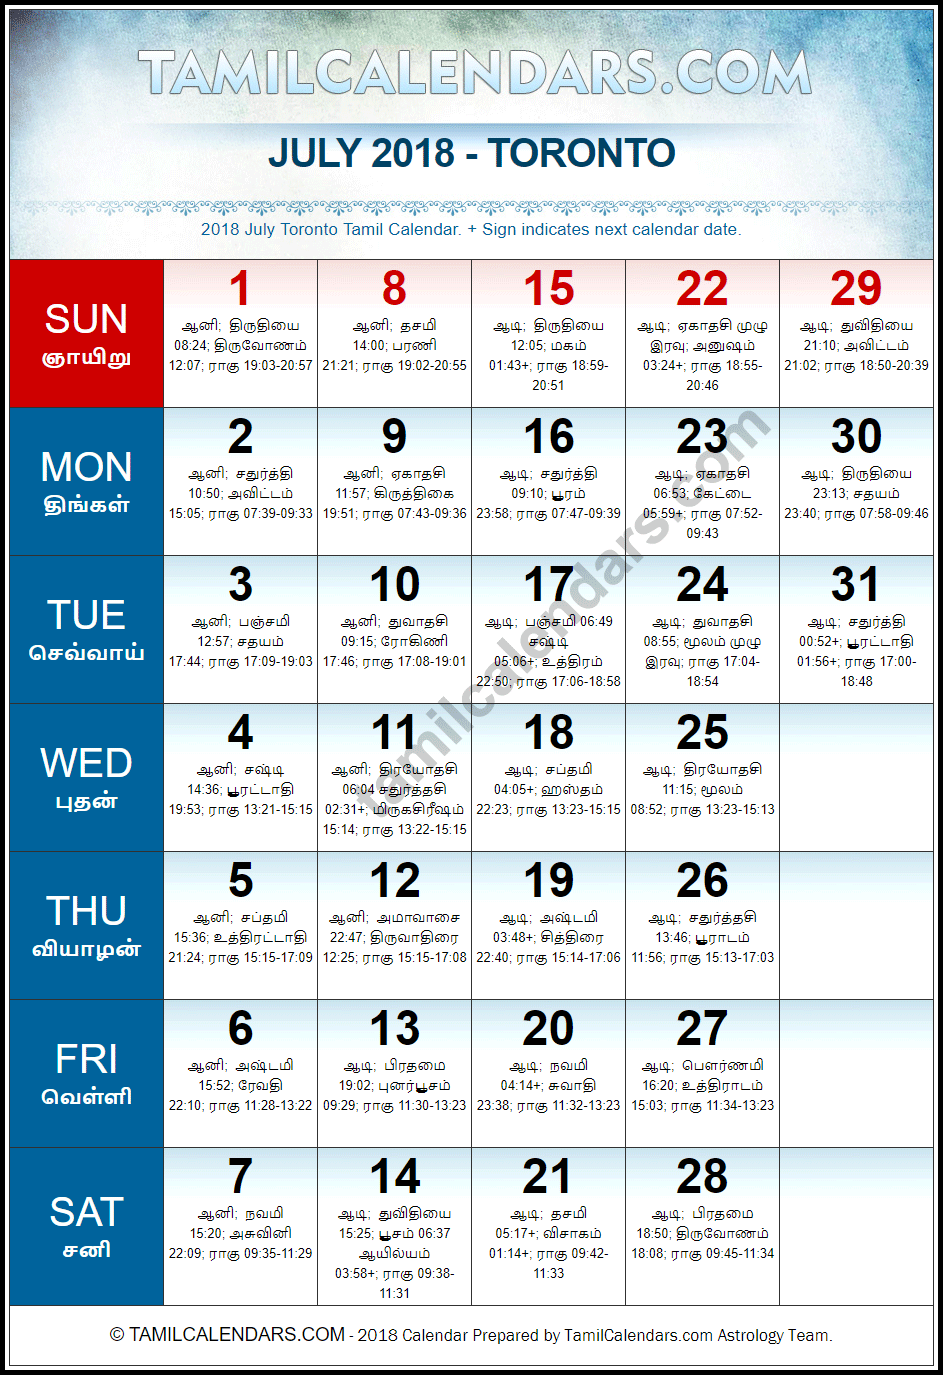 July 2018 Tamil Calendar for Toronto, Canada